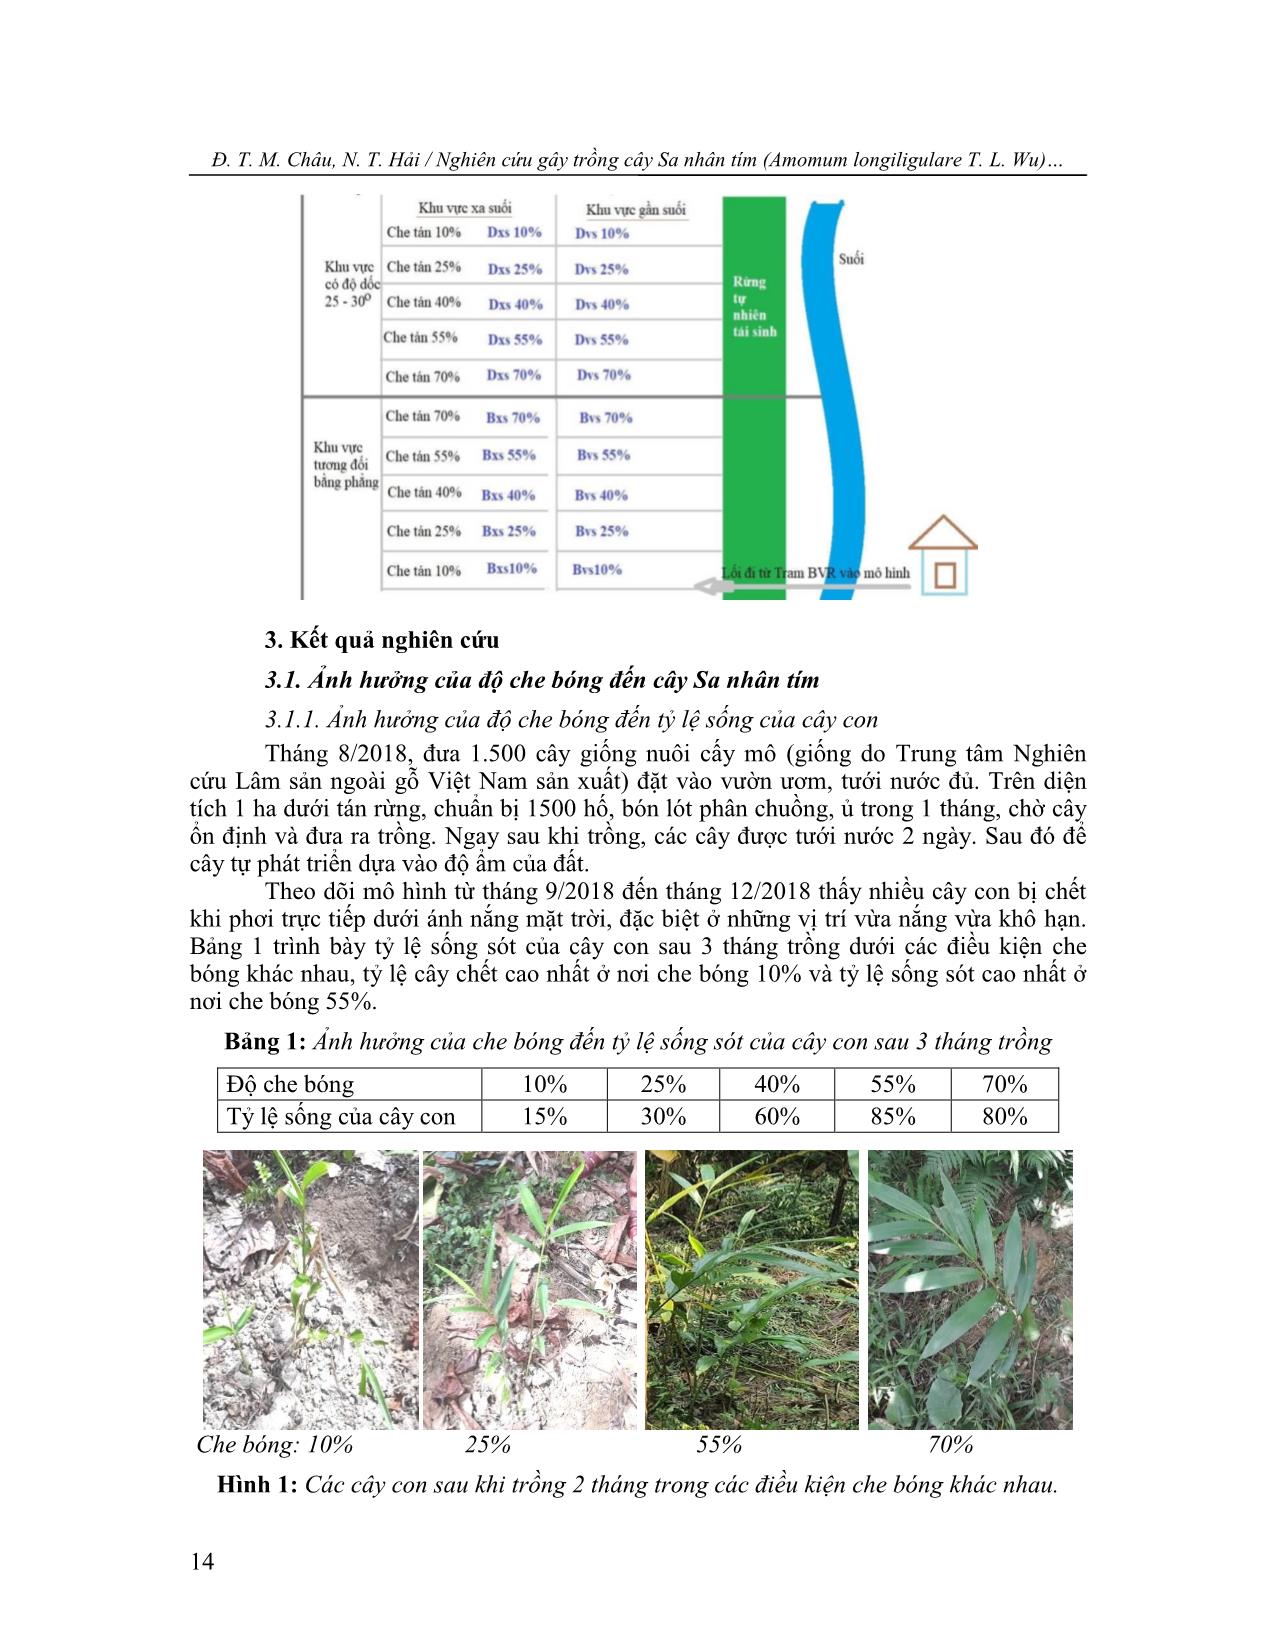 Nghiên cứu gây trồng cây sa nhân tím (Amomum longiligulare T. L.Wu) dưới tán rừng tự nhiên ở vùng miền núi Nghệ An trang 3